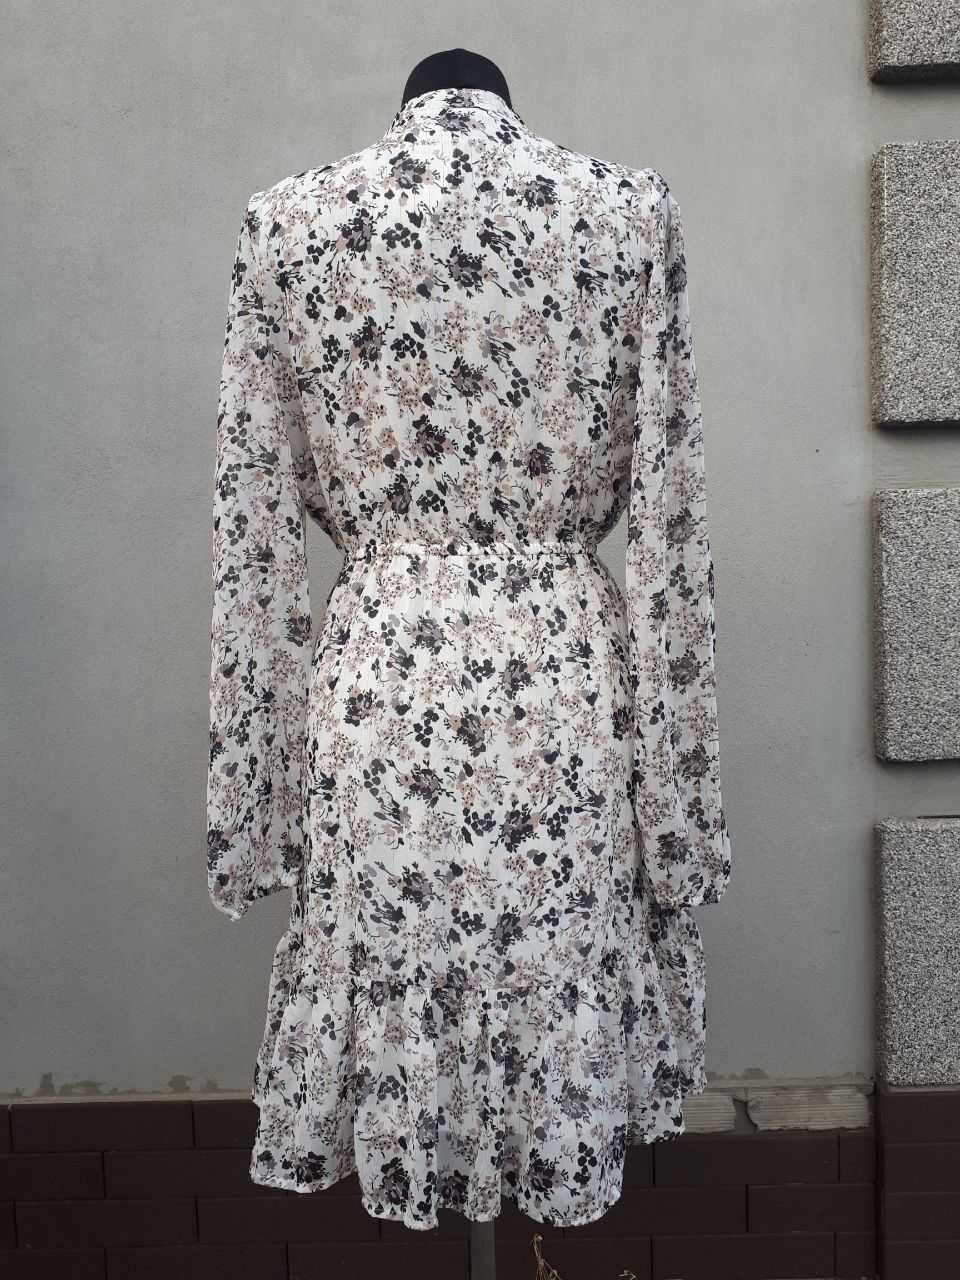 Брендовое женское платье цвета айвори.Сниму видео товара.